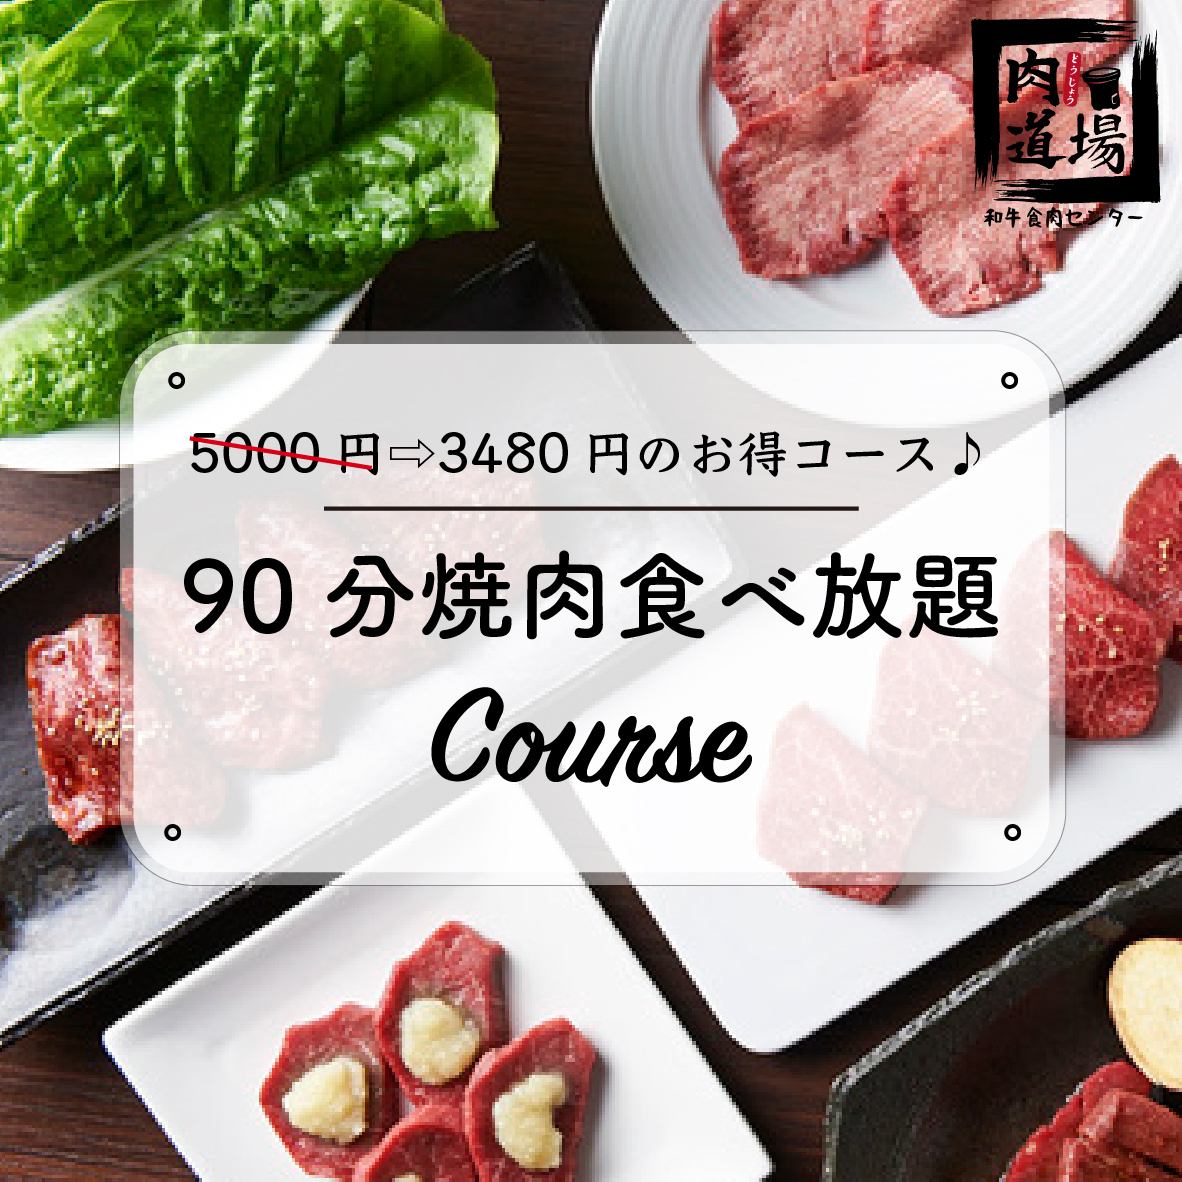 “肉道场简单套餐”★90分钟自助套餐★3,480日元